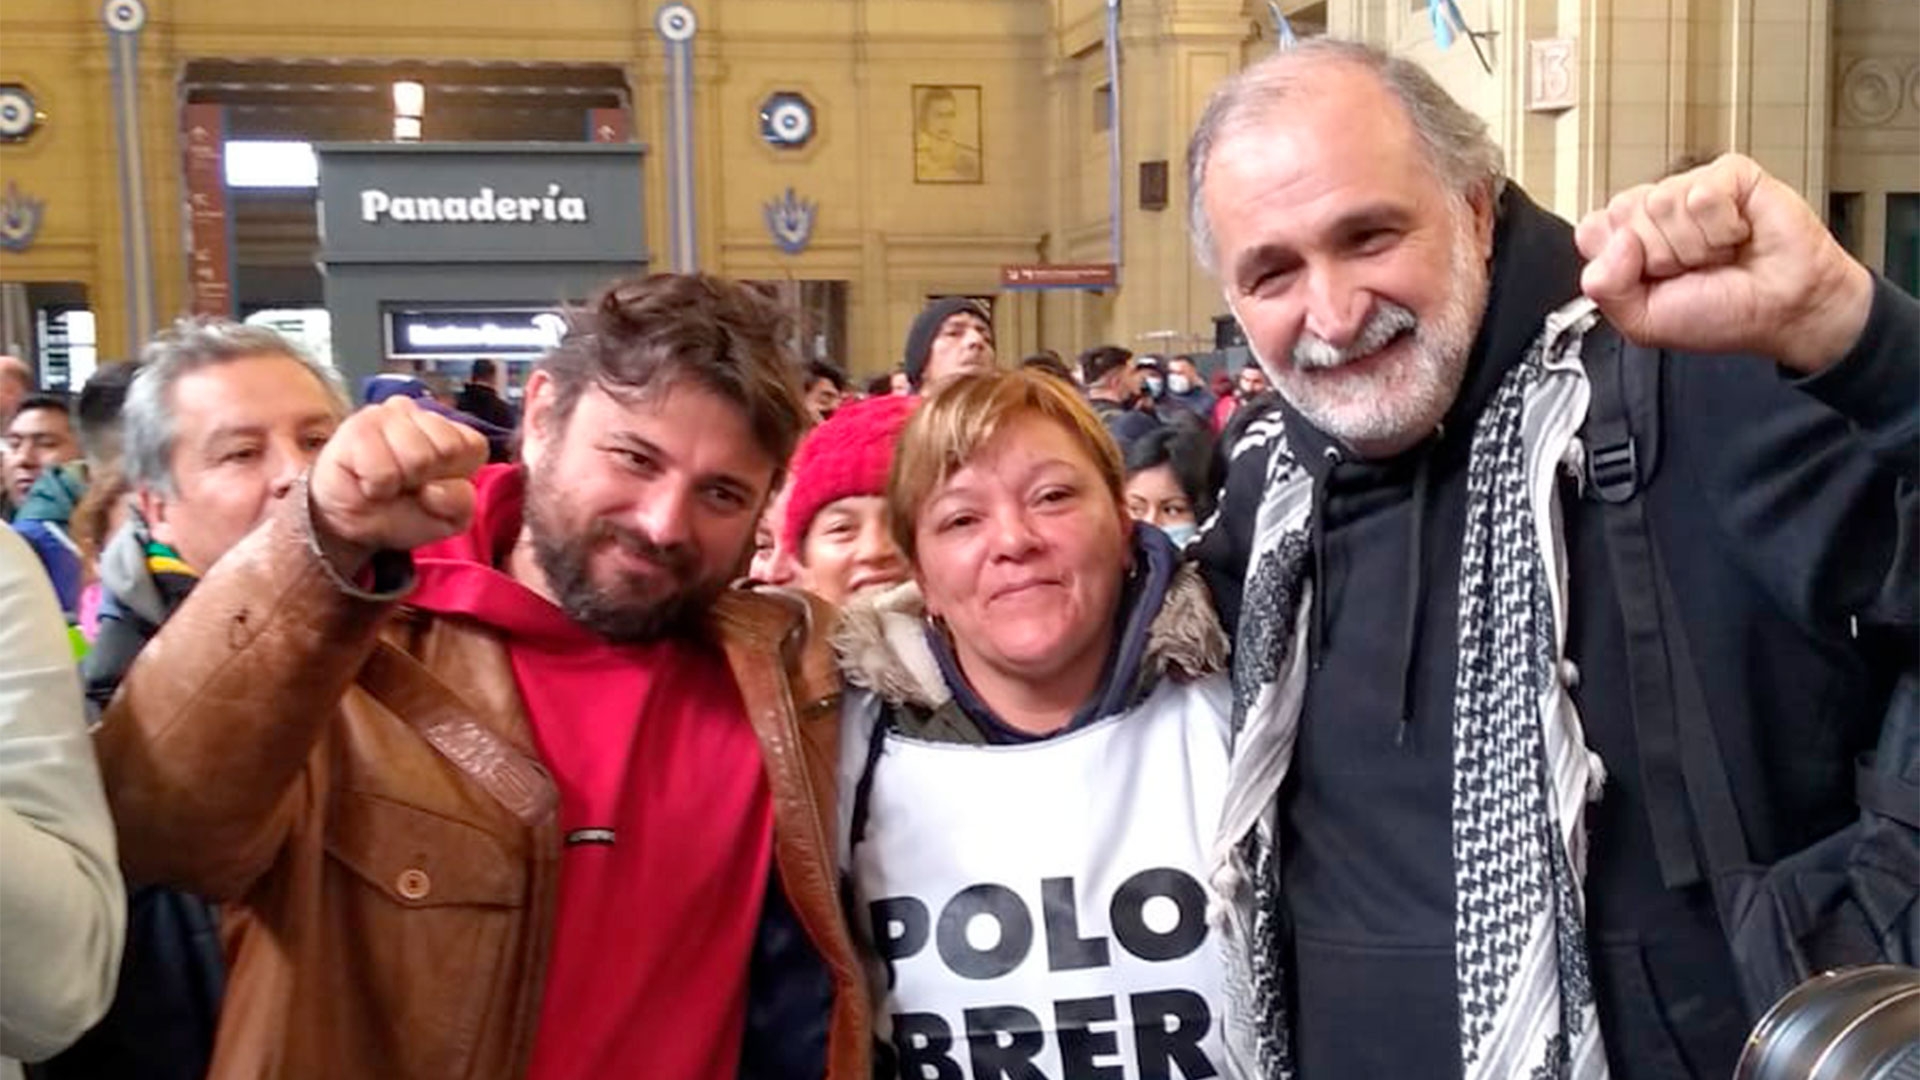 Ayer Eduardo Belliboni, del Polo Obrero, participó de una asamblea liderada por Juan Grabois en la Estación Constitución 